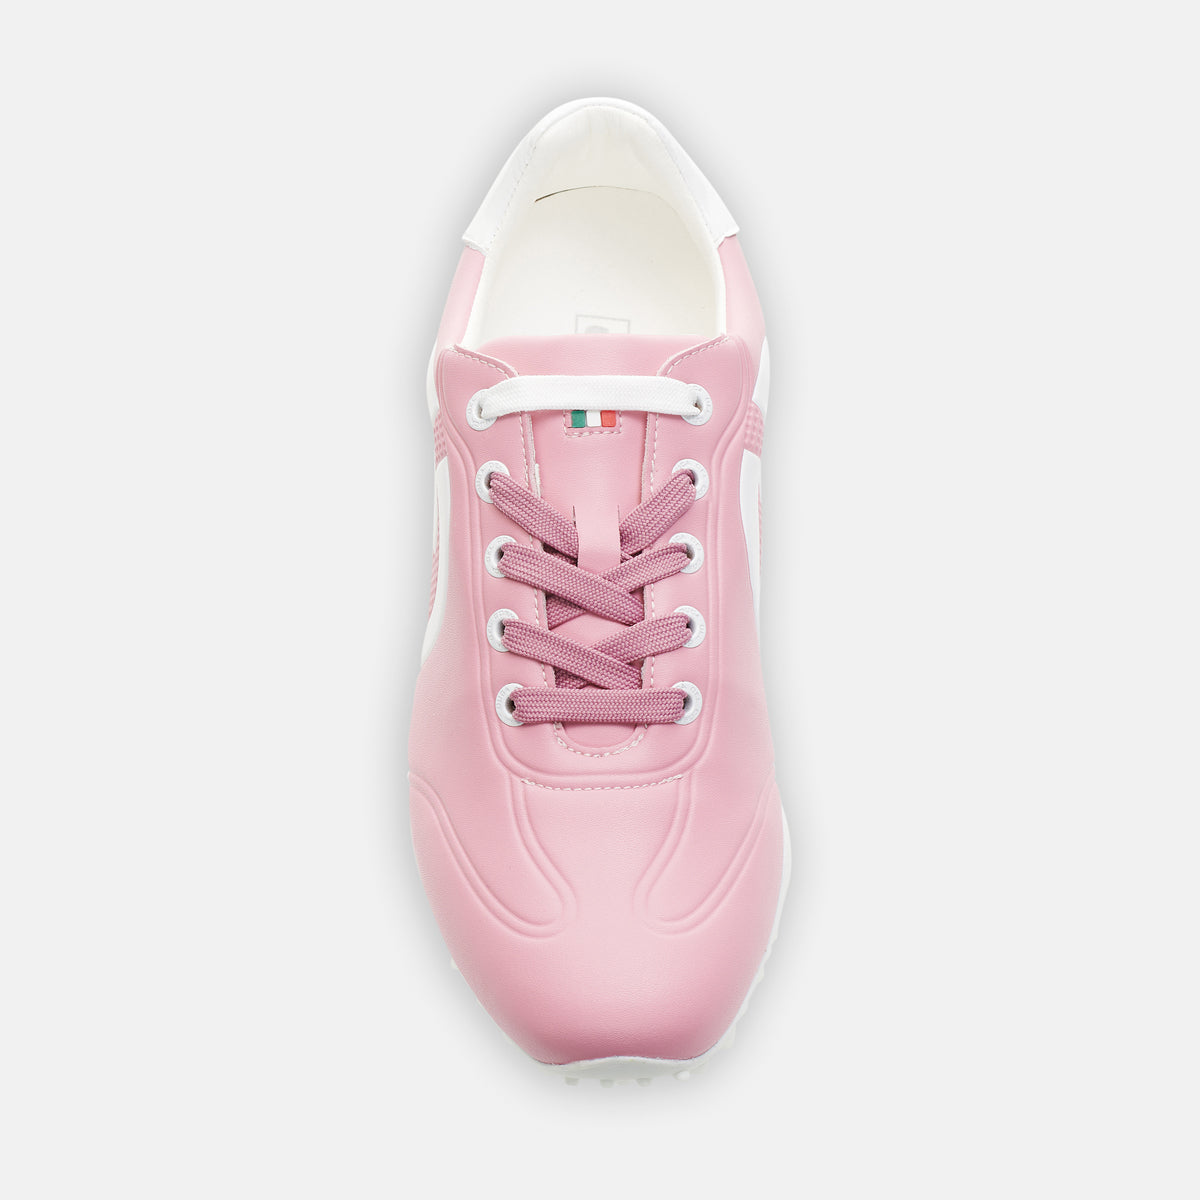 Queenscup - Roze Dames Golfschoen